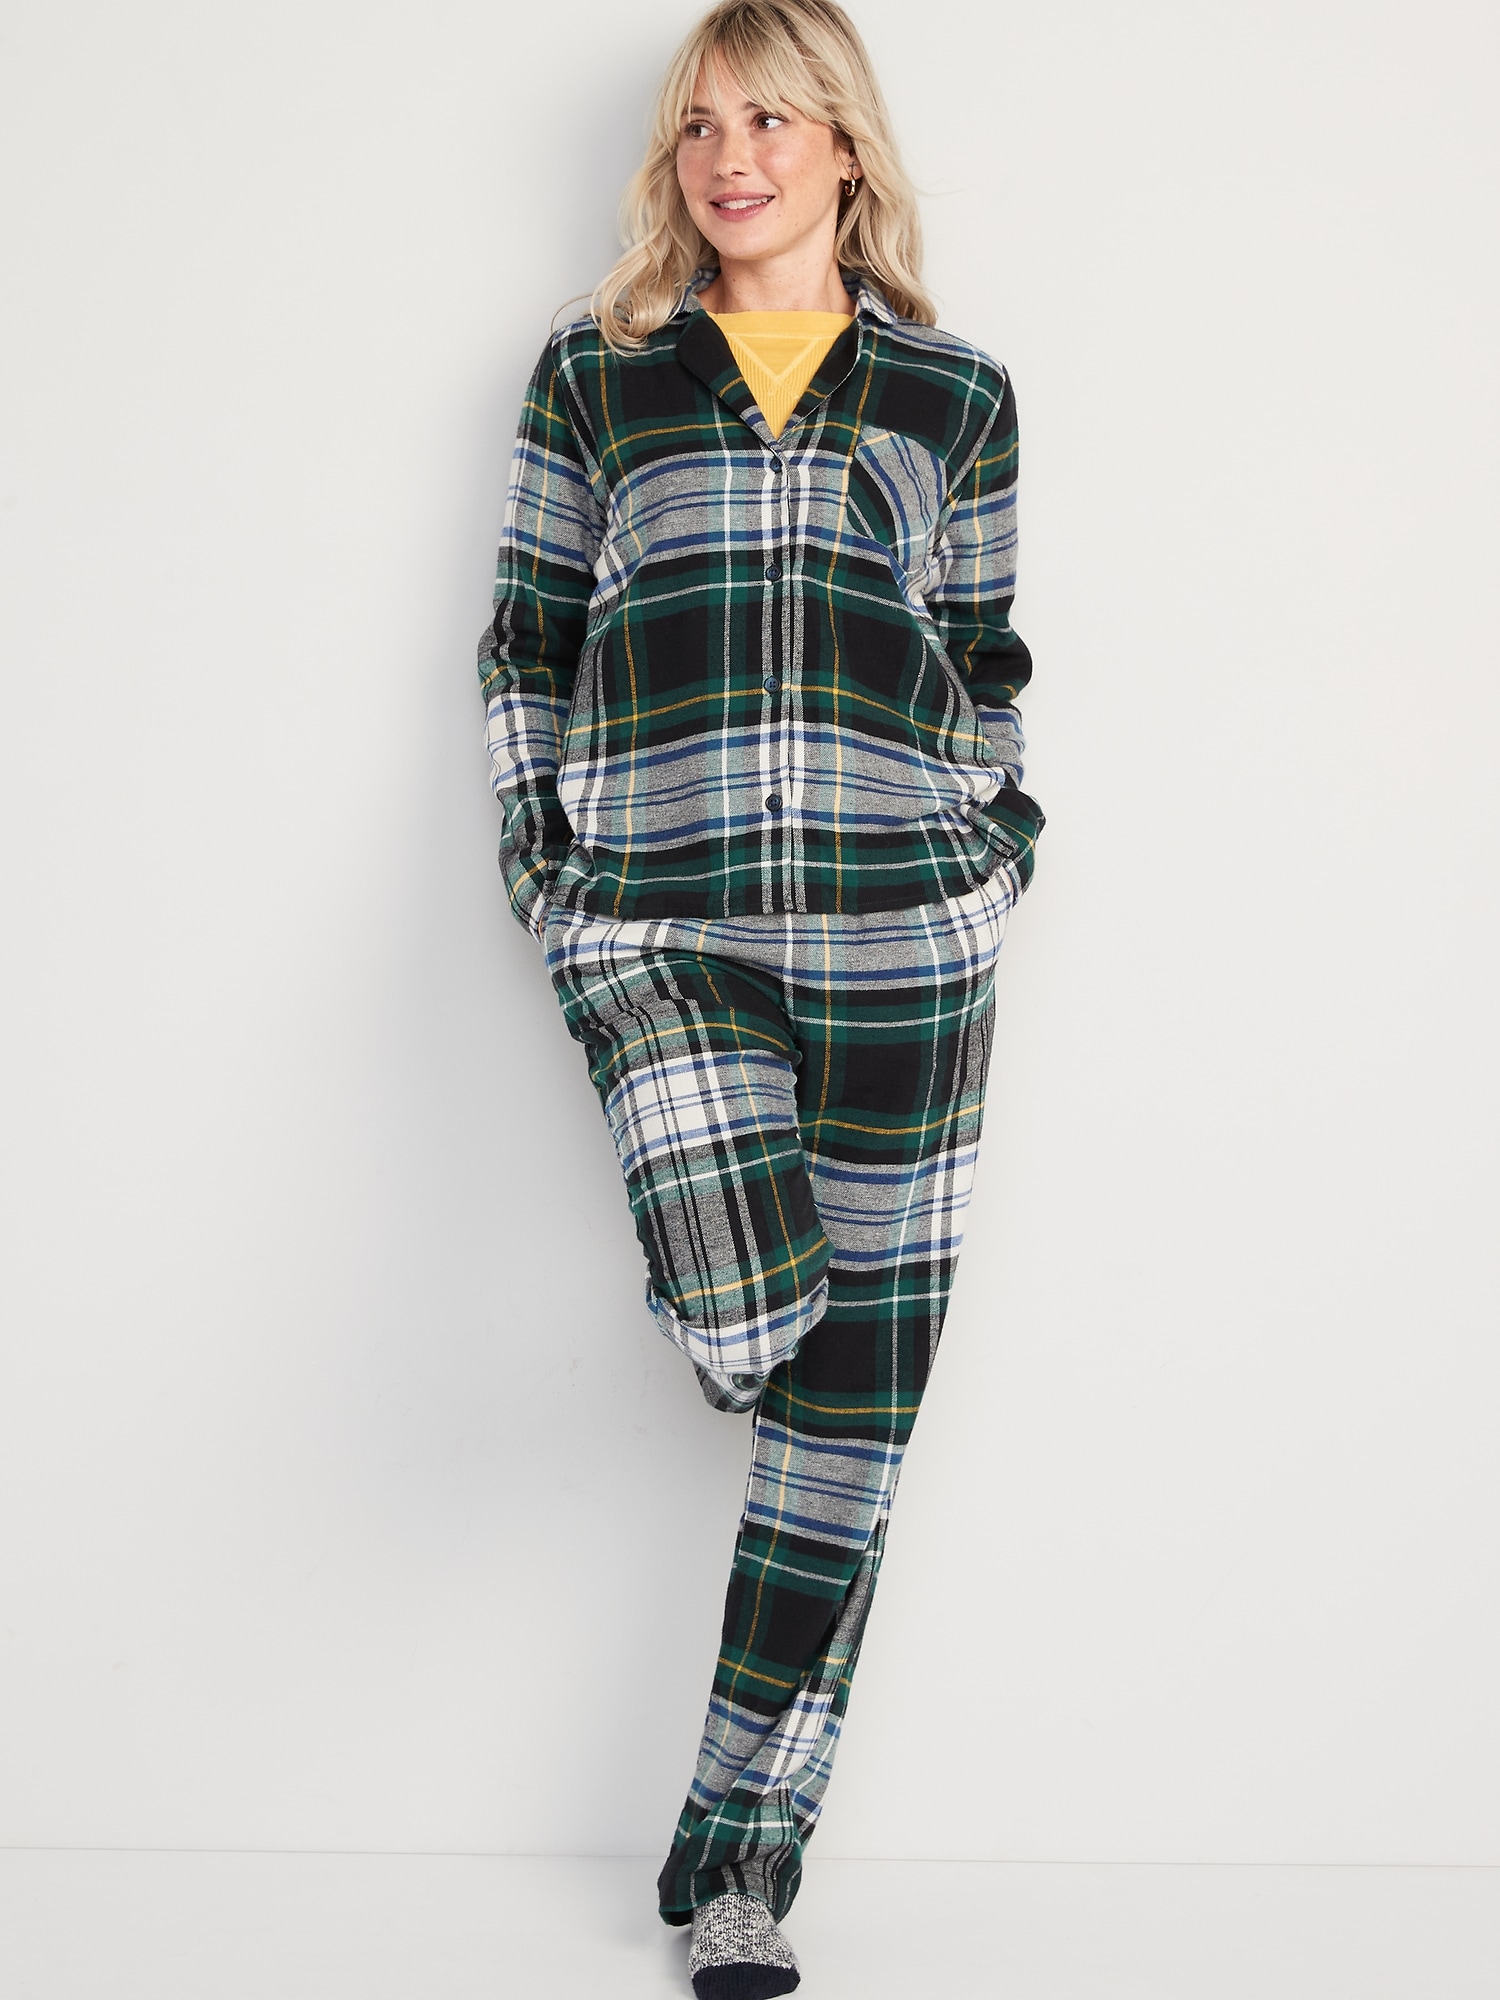 Flannel Pajamas Pajamas Sets Women's Ladies Pajamas M-3xl Thick